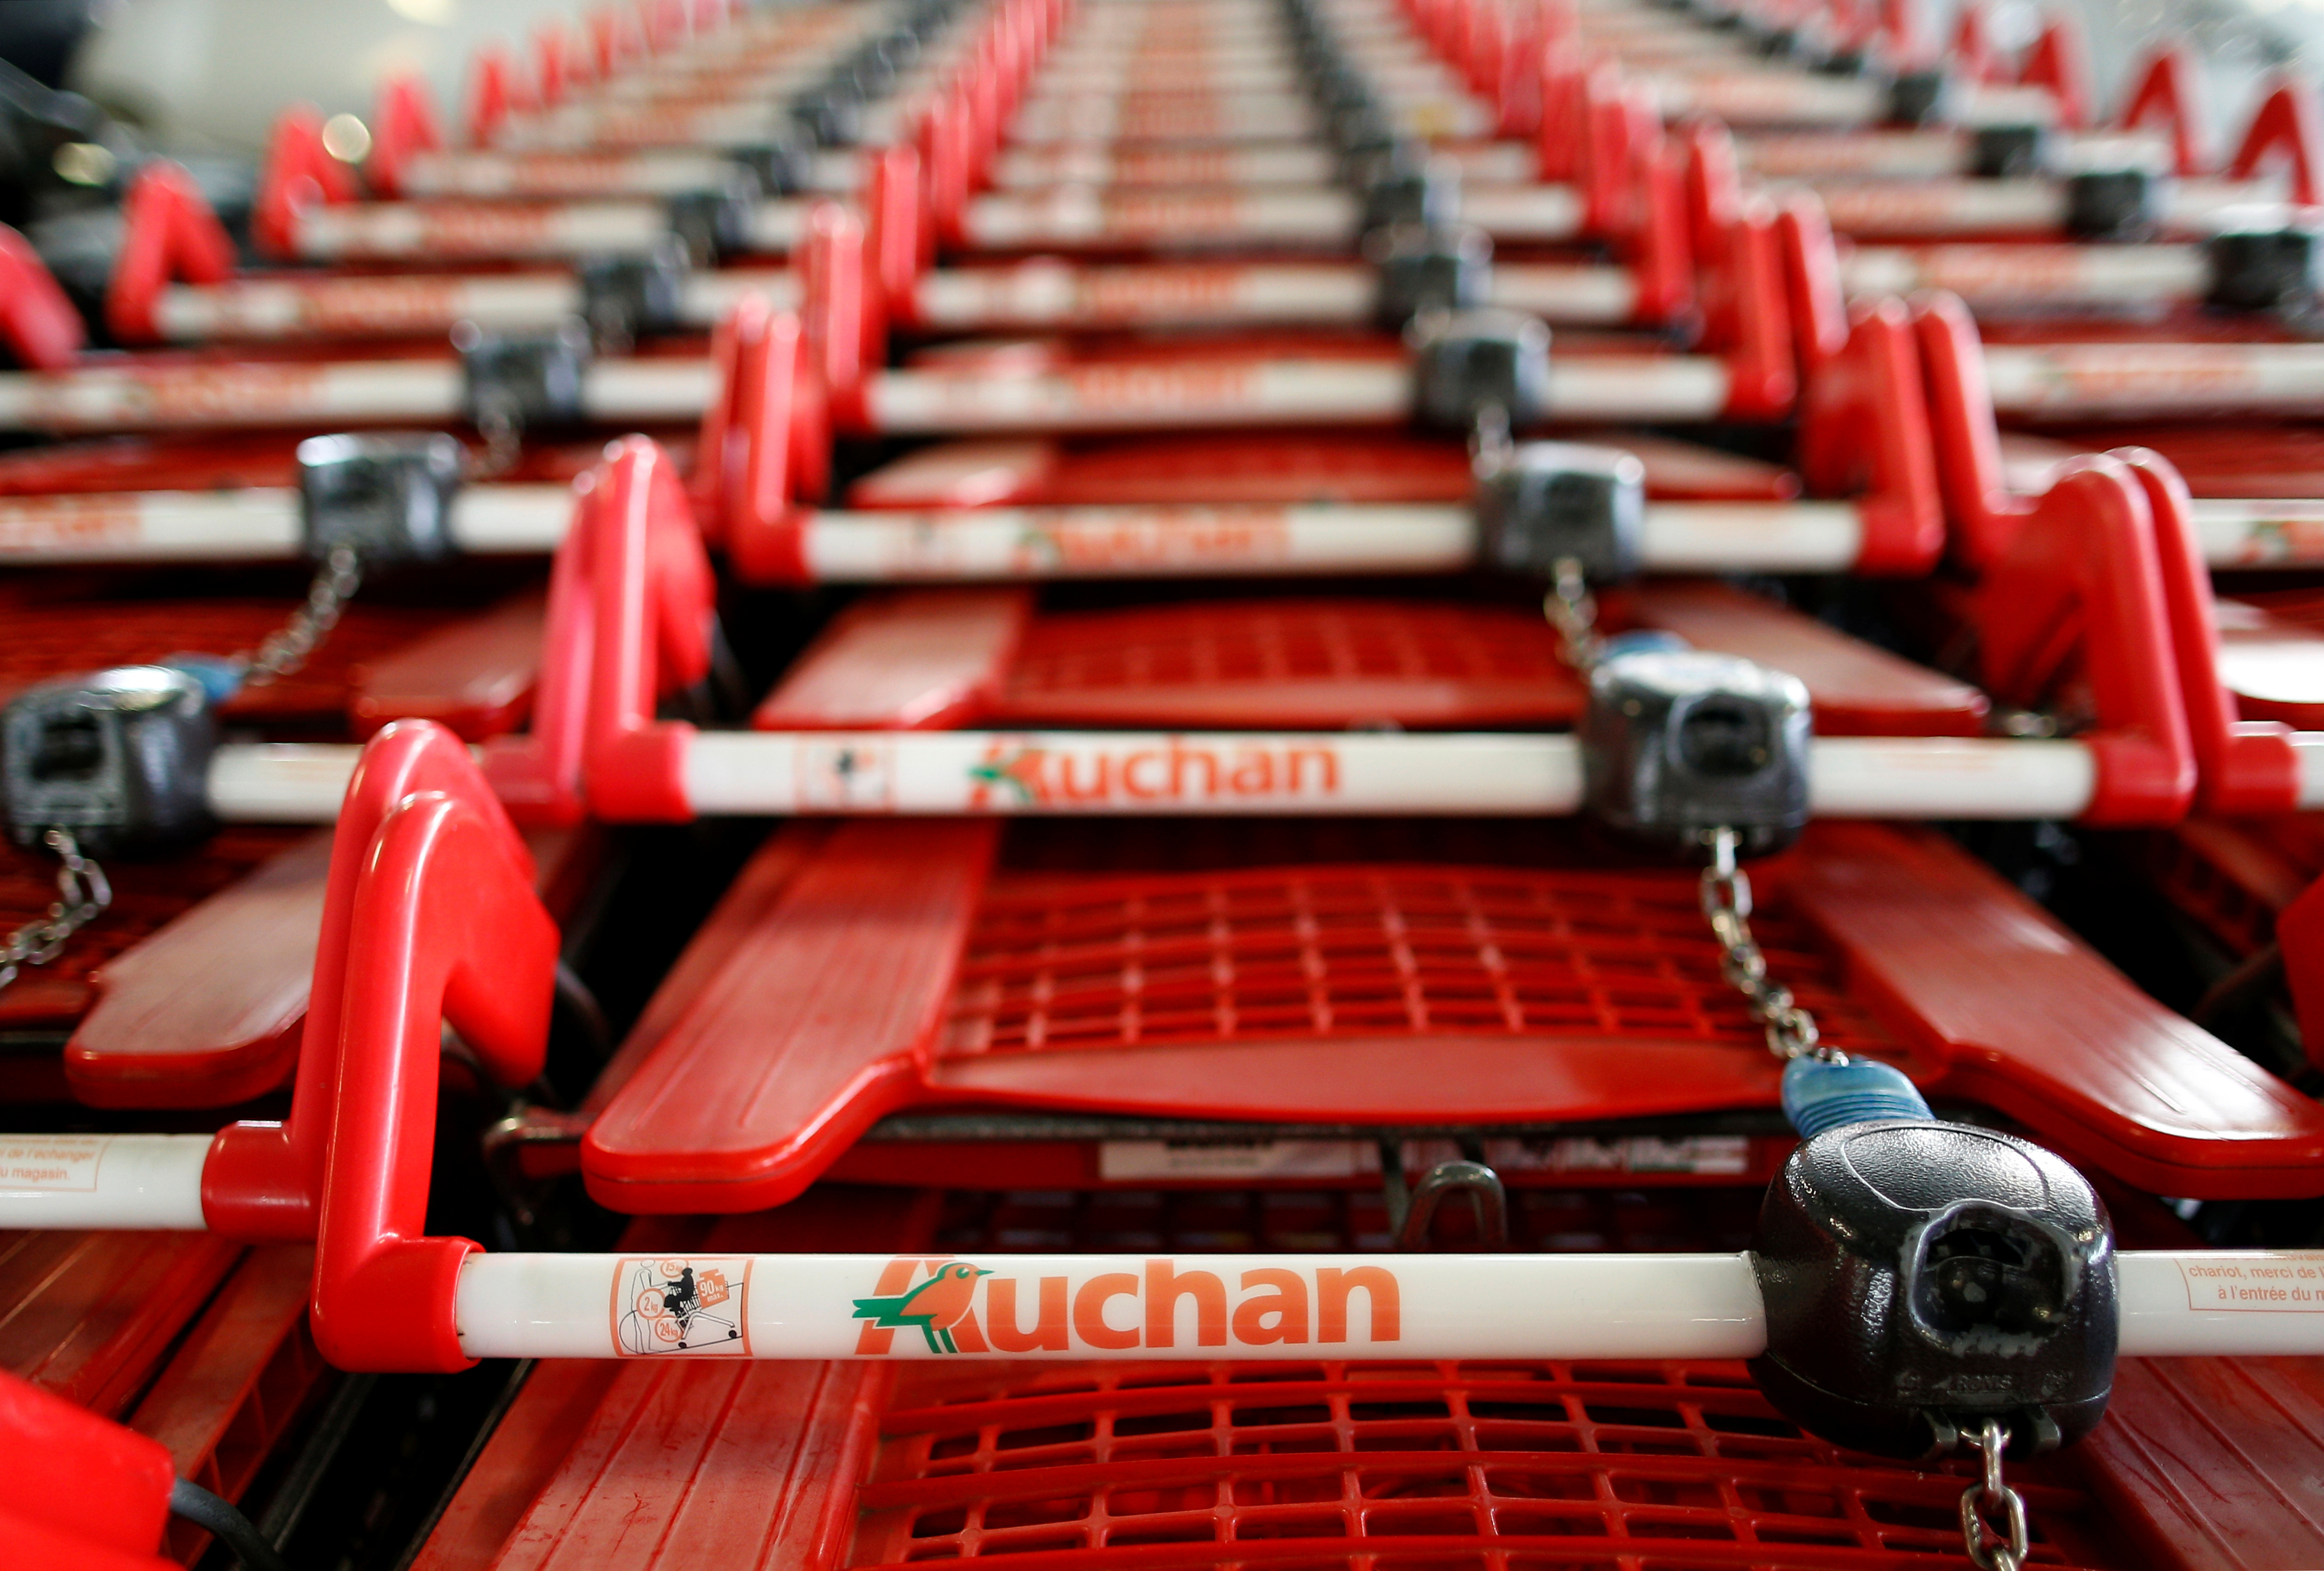 Auchan annonce la suppression de 1.475 postes